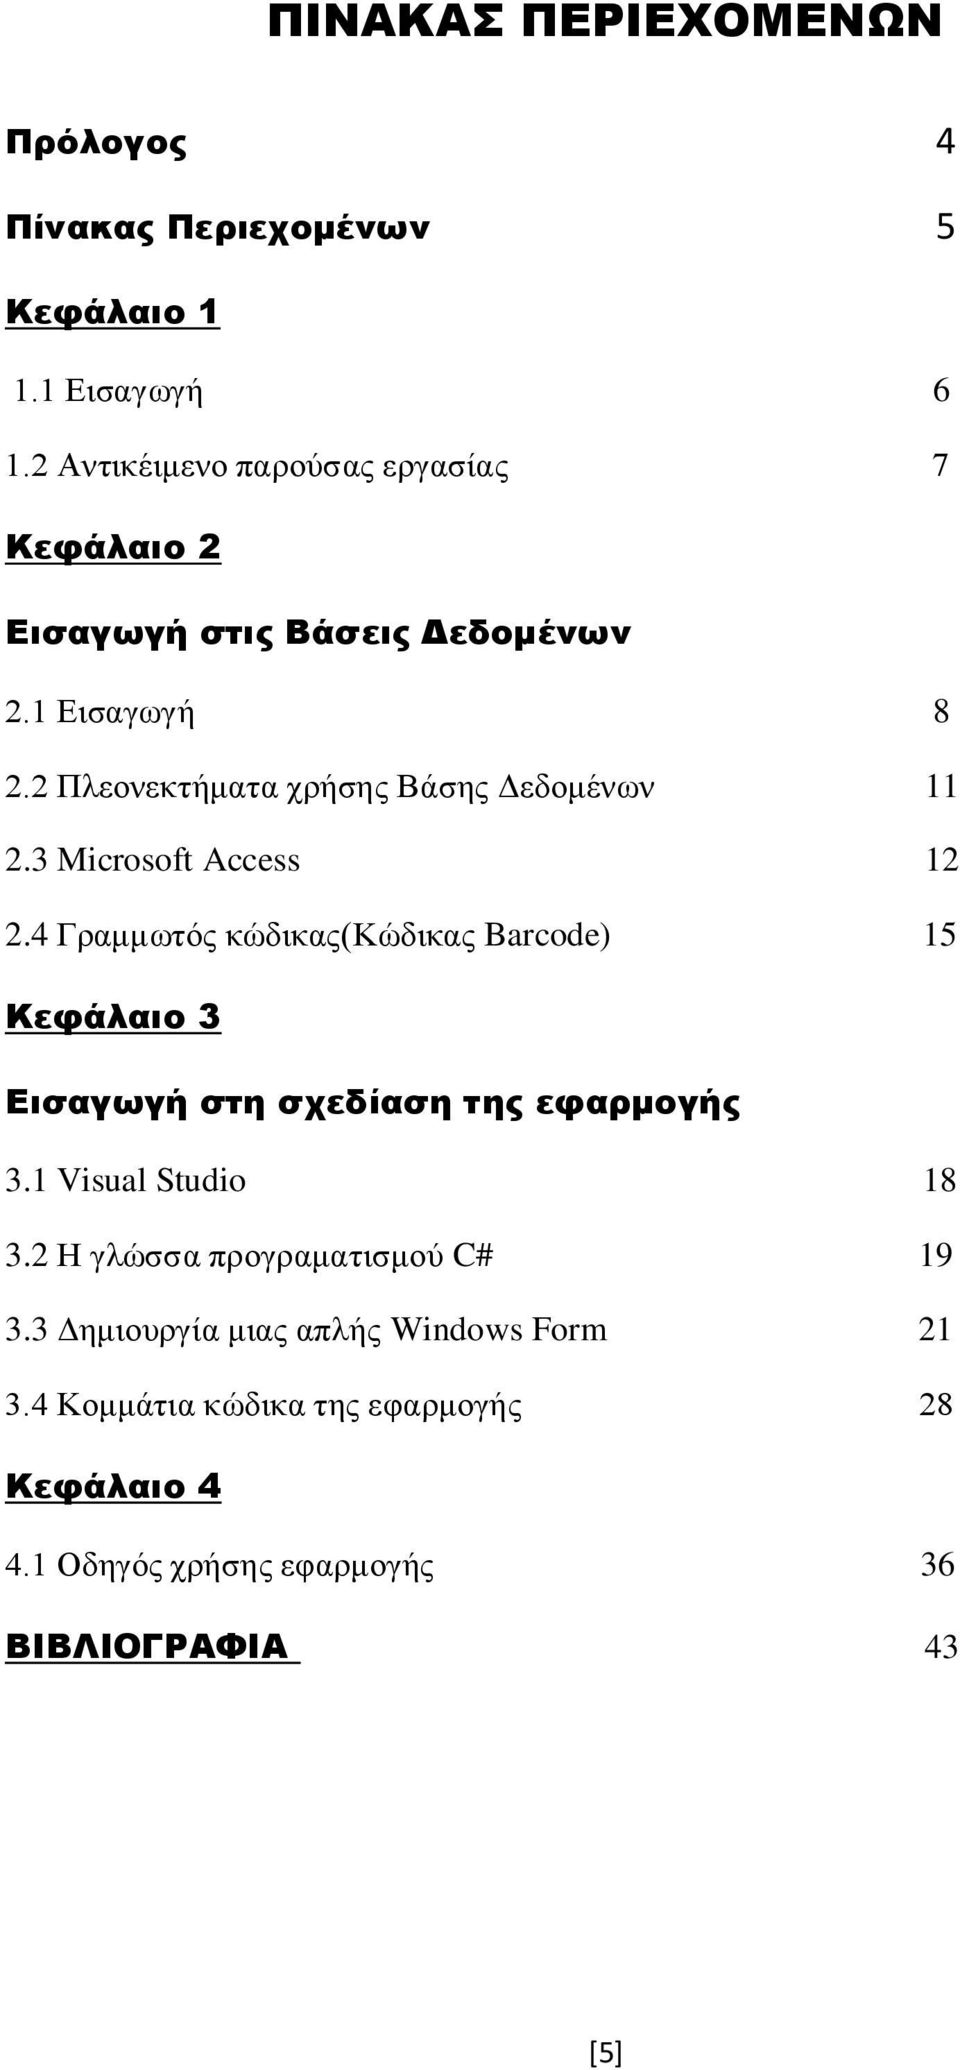 2 Πλεονεκτήματα χρήσης Βάσης Δεδομένων 11 2.3 Microsoft Access 12 2.